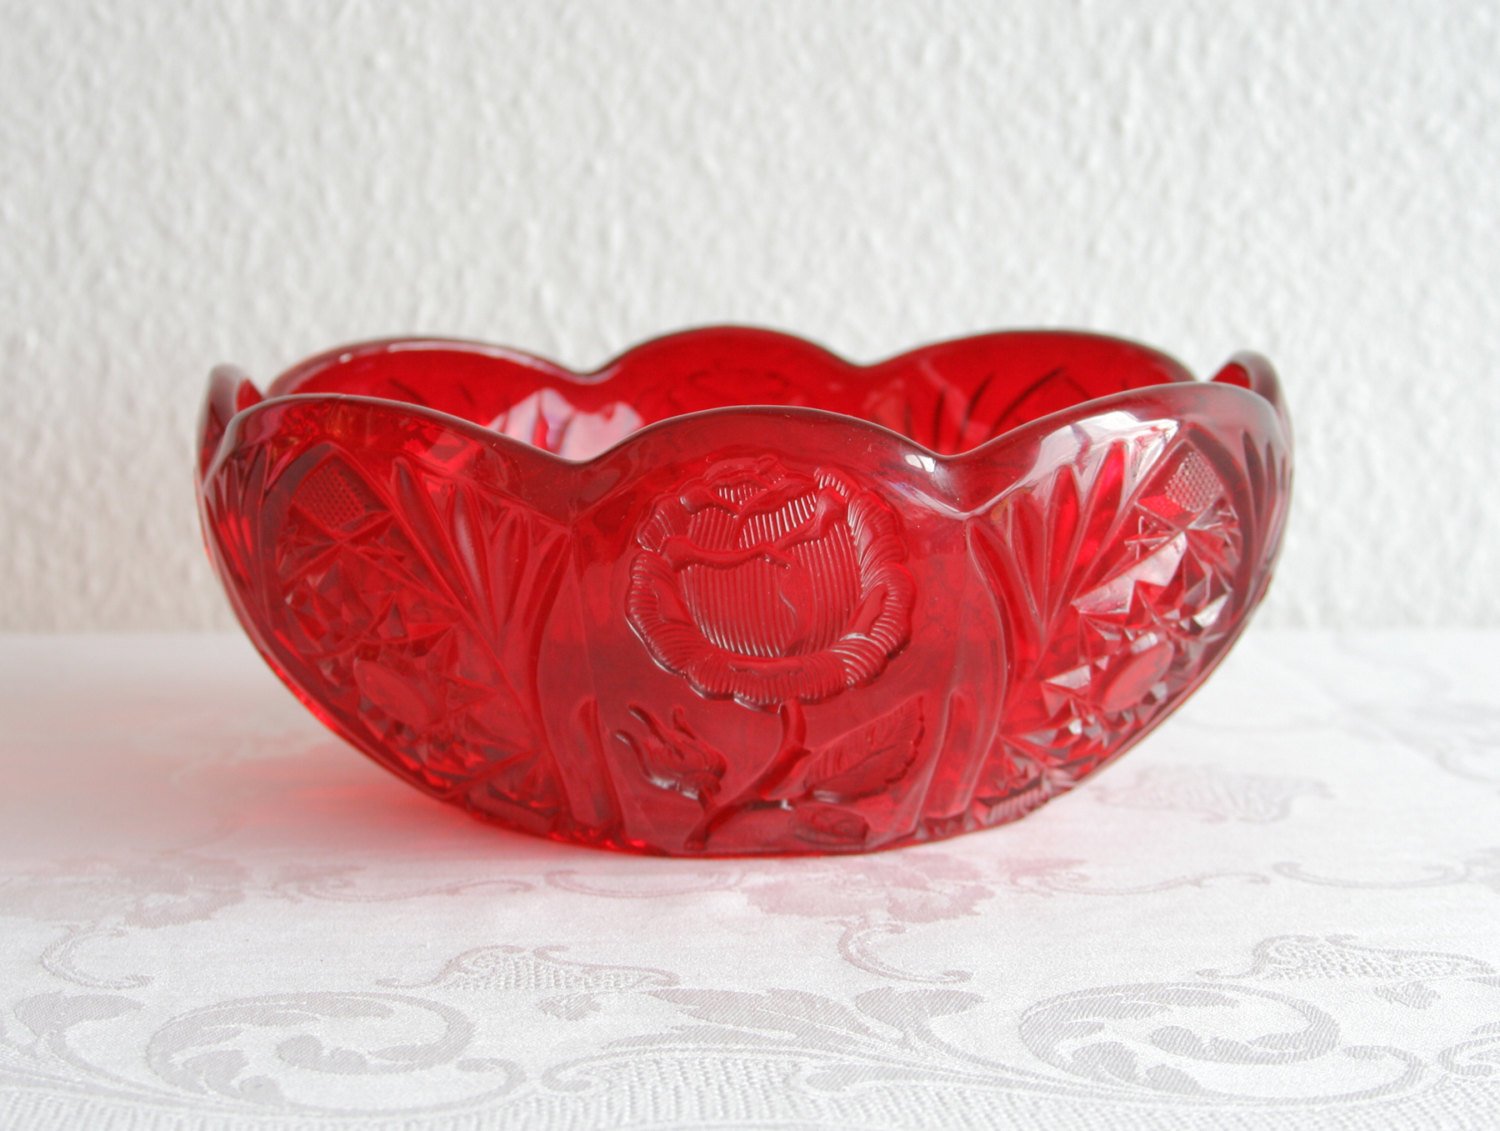 BROCKWITZ Rose Garden Ruby Red Large Glass Rose Bowl Mollaris.com 